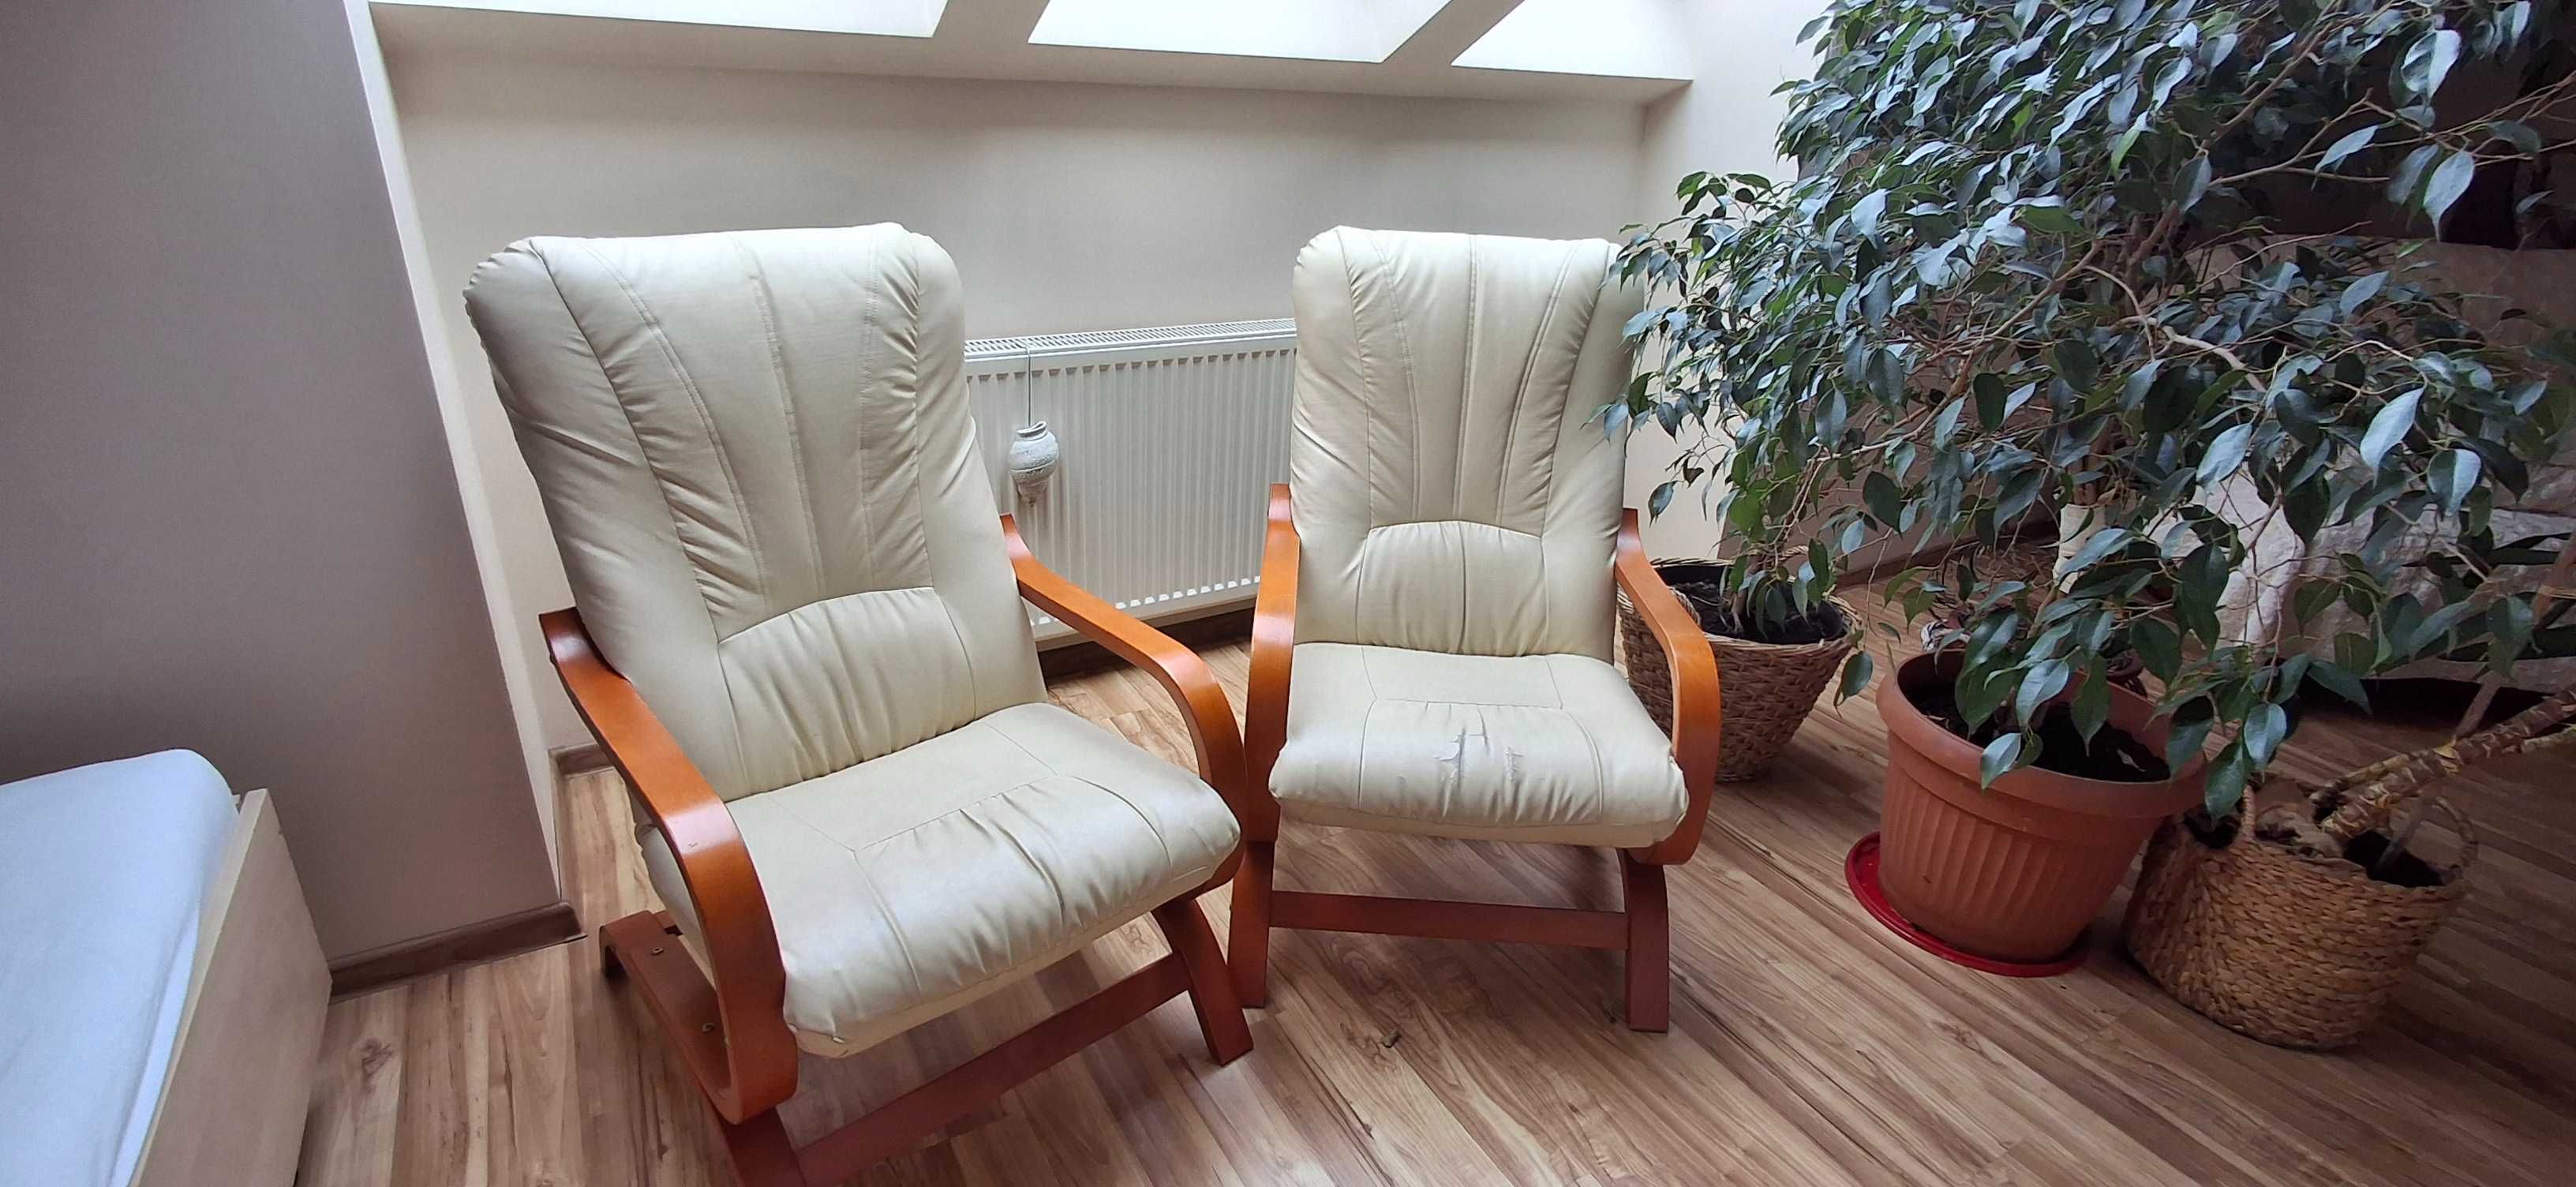 2 fotele w kolorze waniliowym, elementy drewniane- kolor akacja